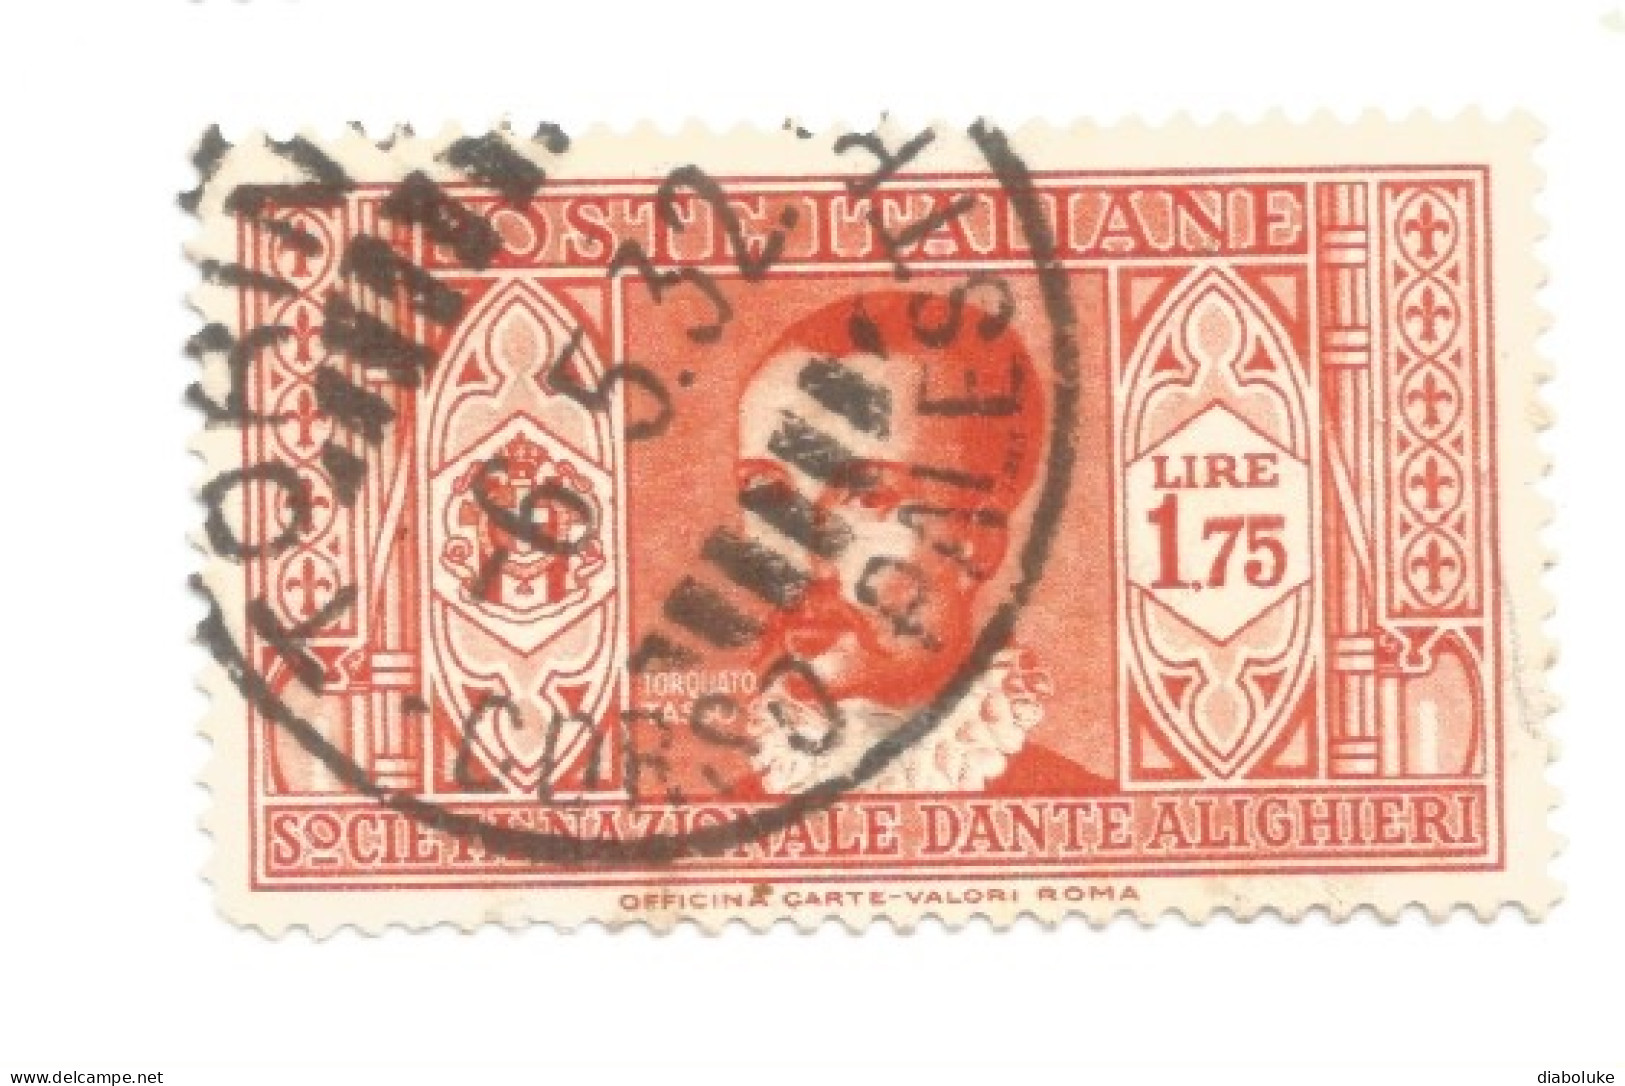 (REGNO D'ITALIA) 1932, PRO SOCIETÀ DANTE ALIGHIERI - Serietta di 11 francobolli usati, annulli da periziare